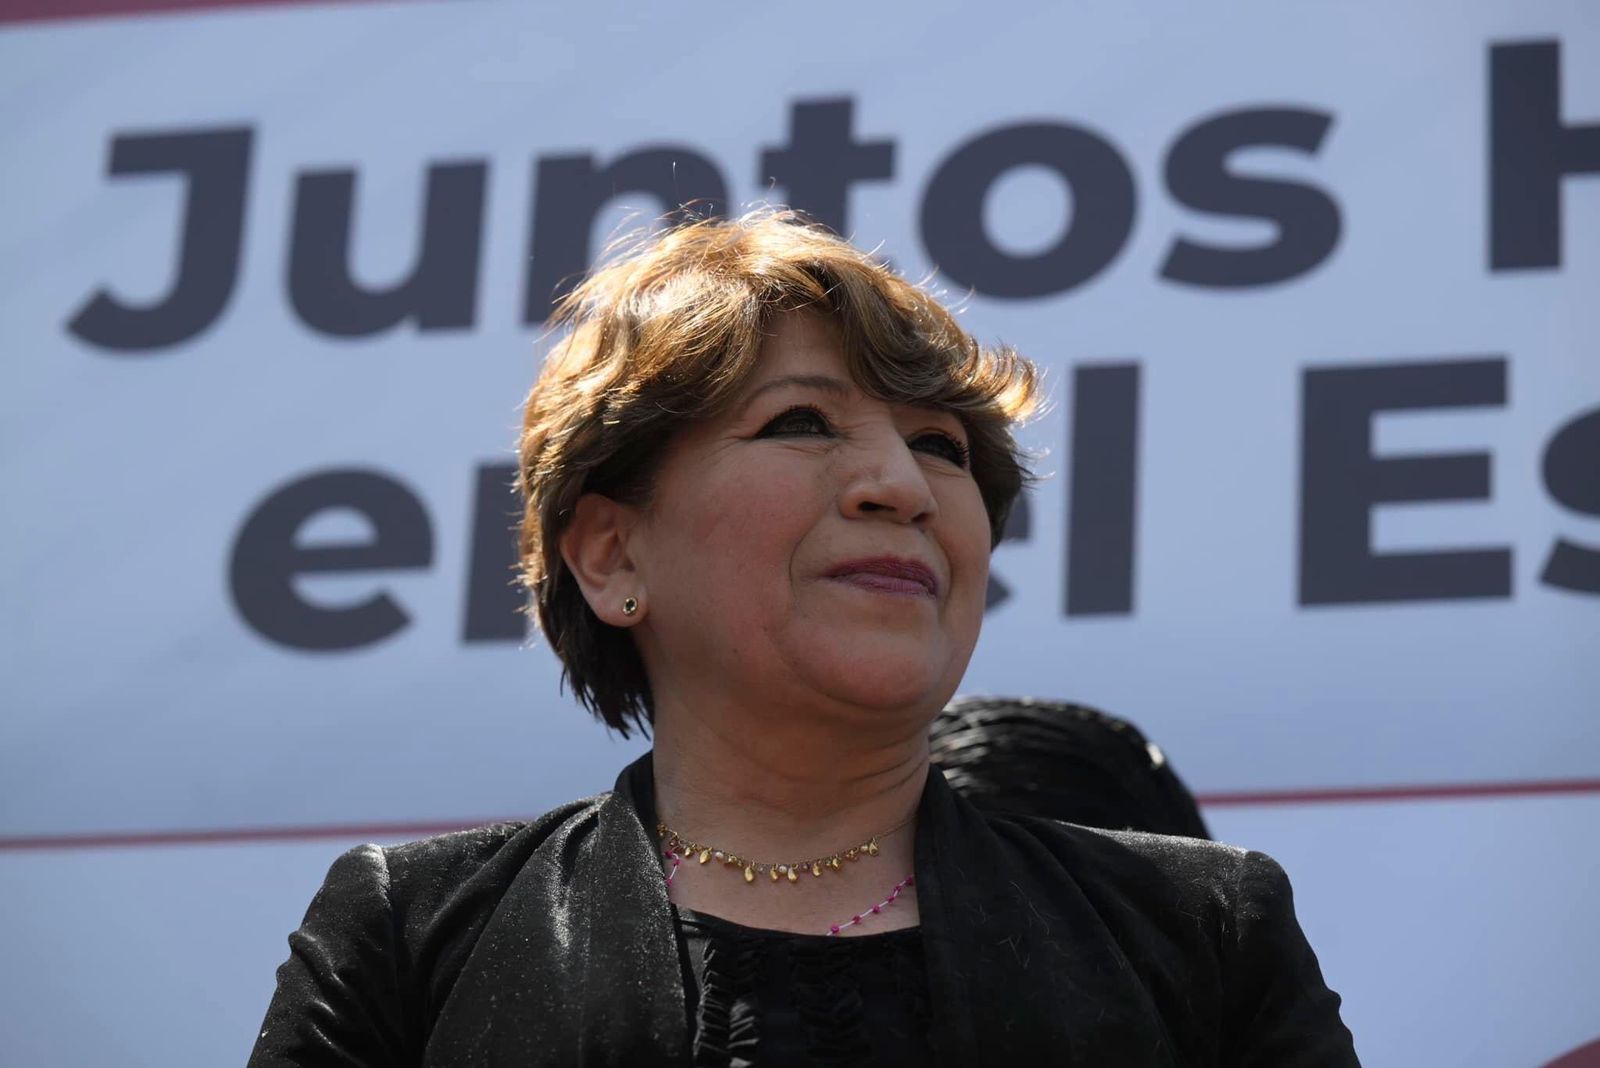 La candidata de Morena al gobierno del Estado de México, Delfina Gómez Älvarez tiene 59% en la preferencia electoral, según datos de la empresa Mitofsky. (Morena Edomex)